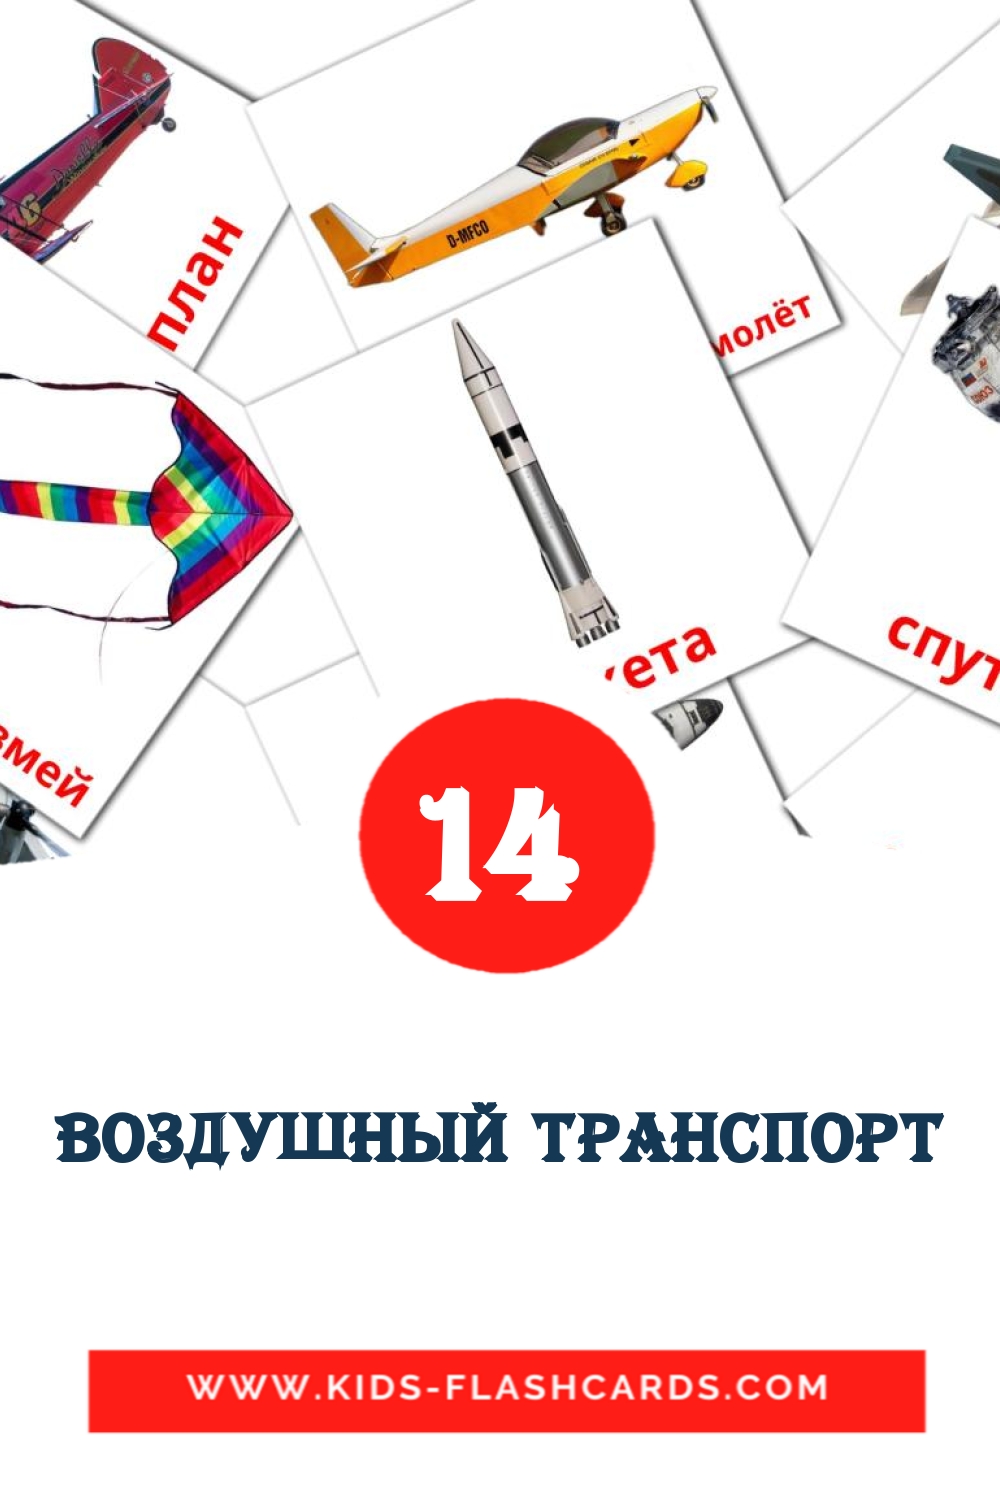 14 Cartões com Imagens de Воздушный транспорт para Jardim de Infância em russas